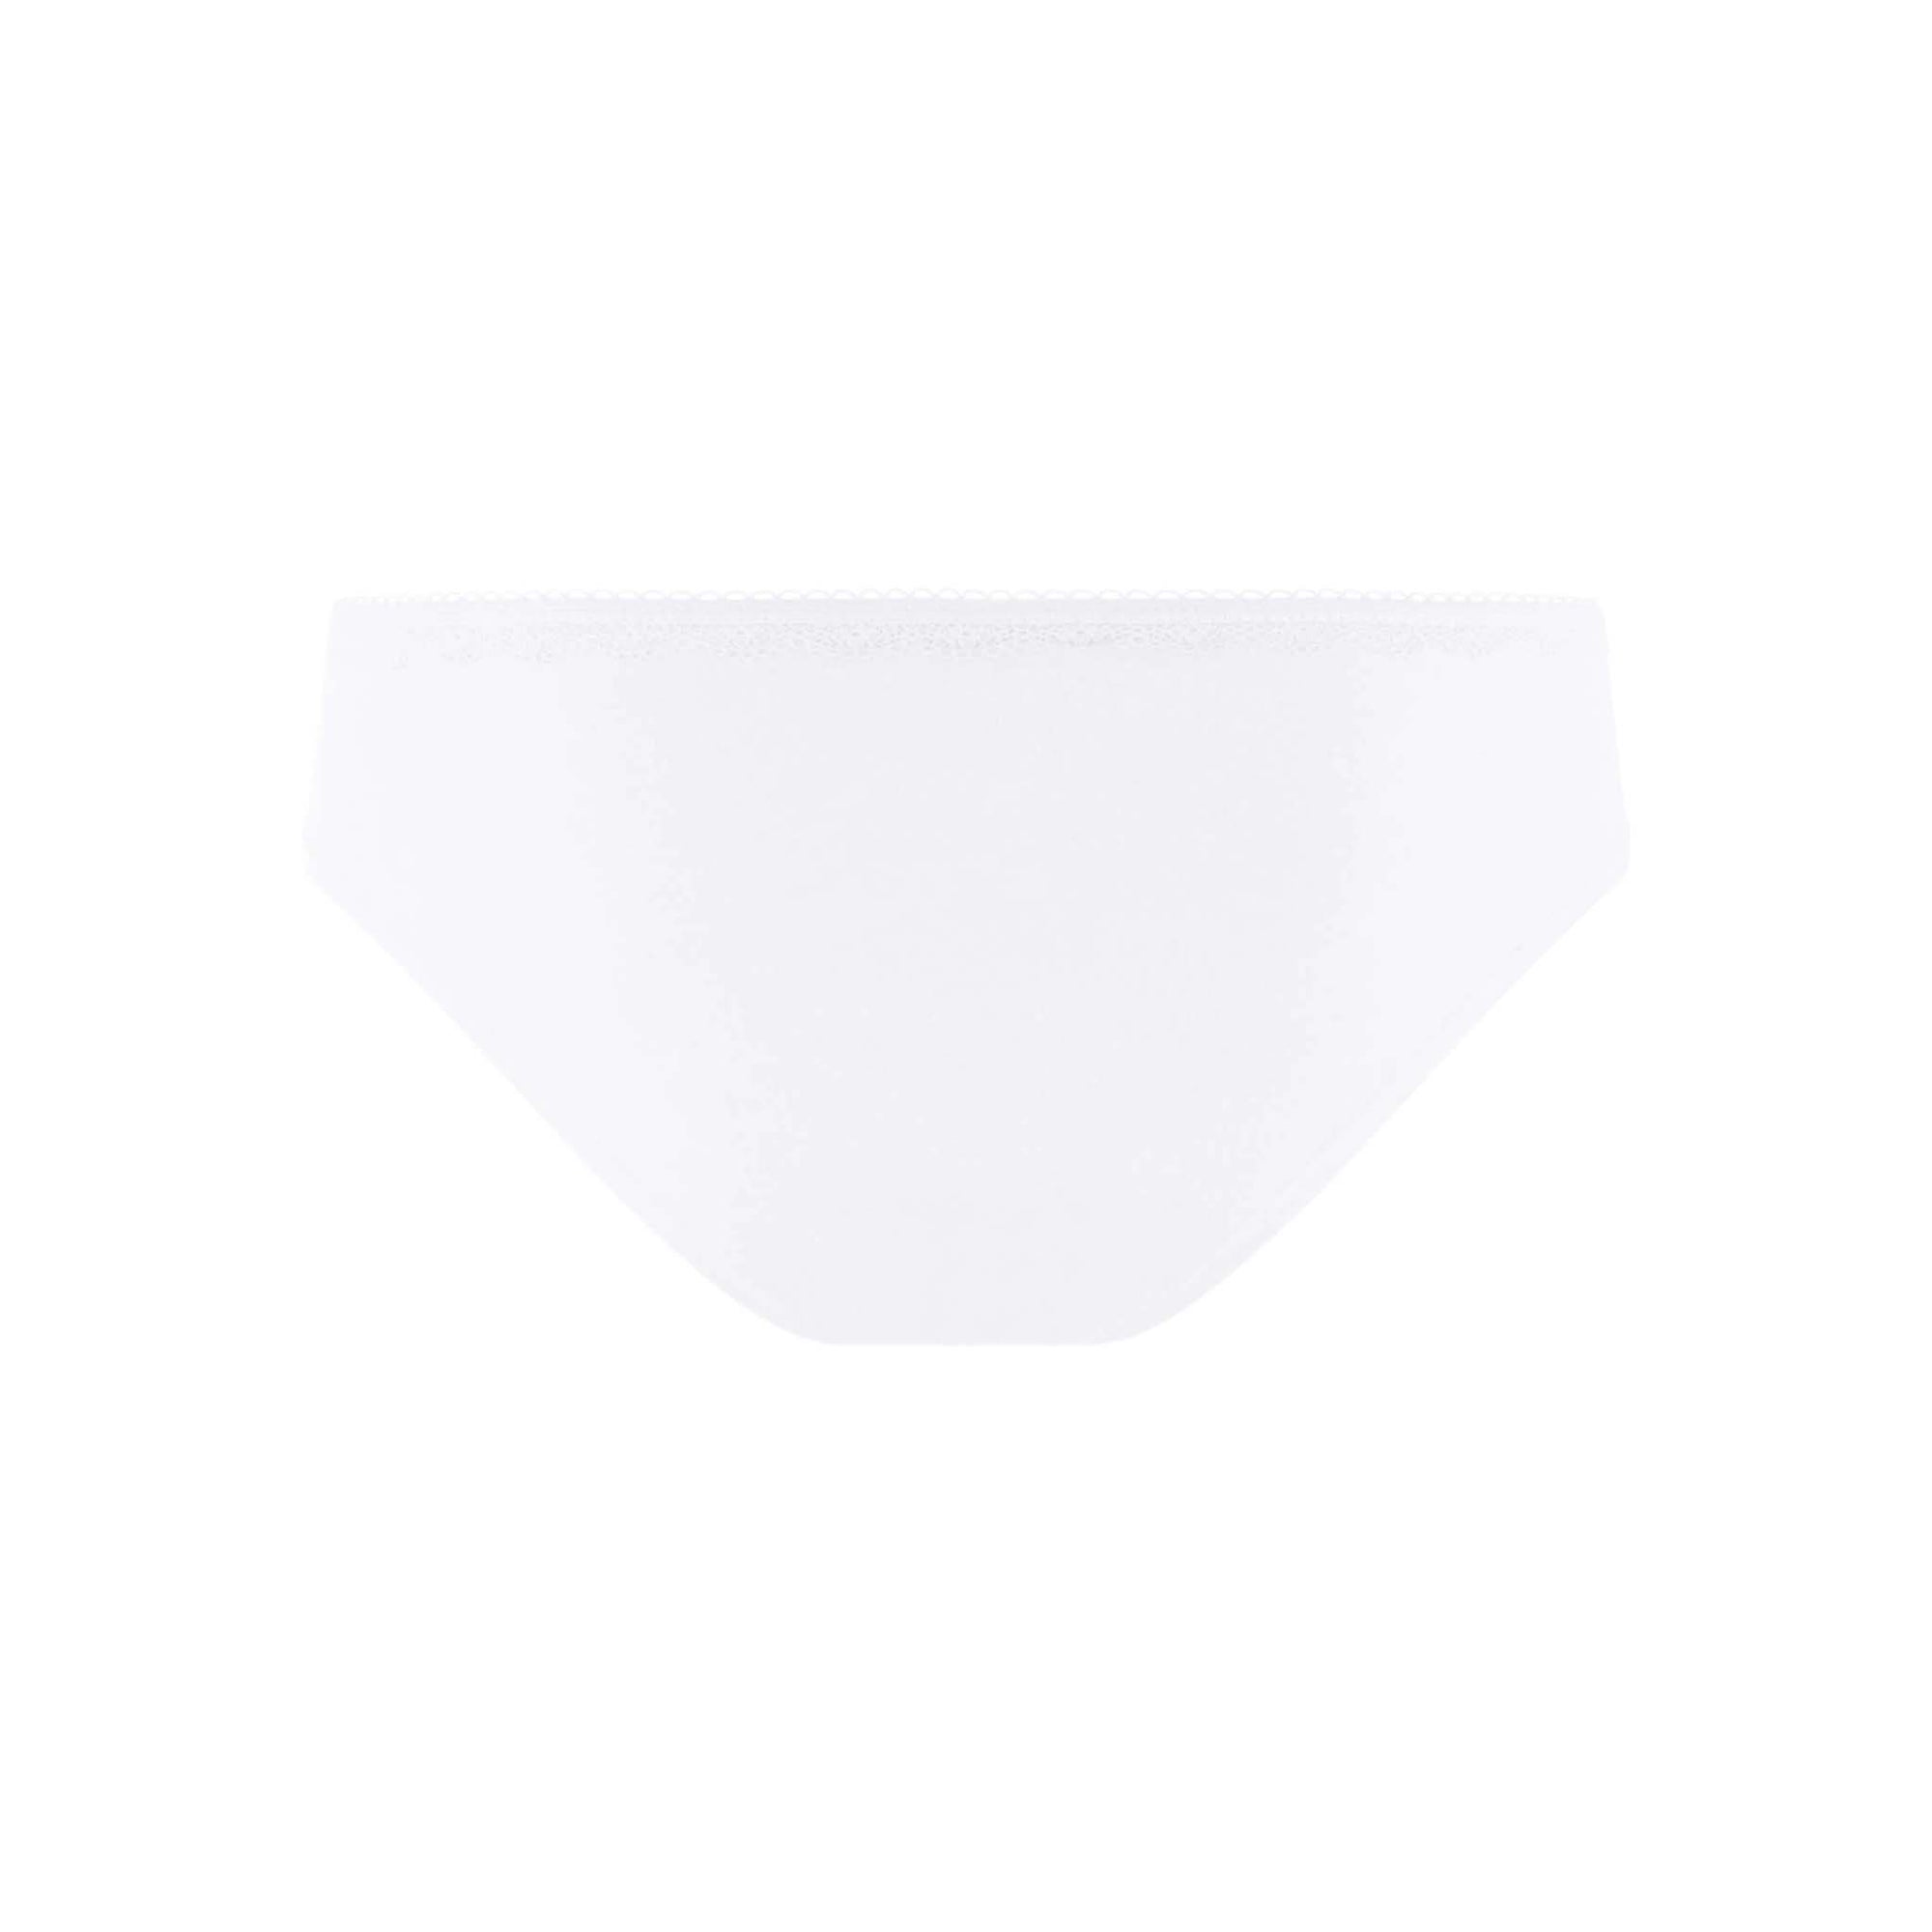 Standard Buttons Underwear Underwear - The Shapes United